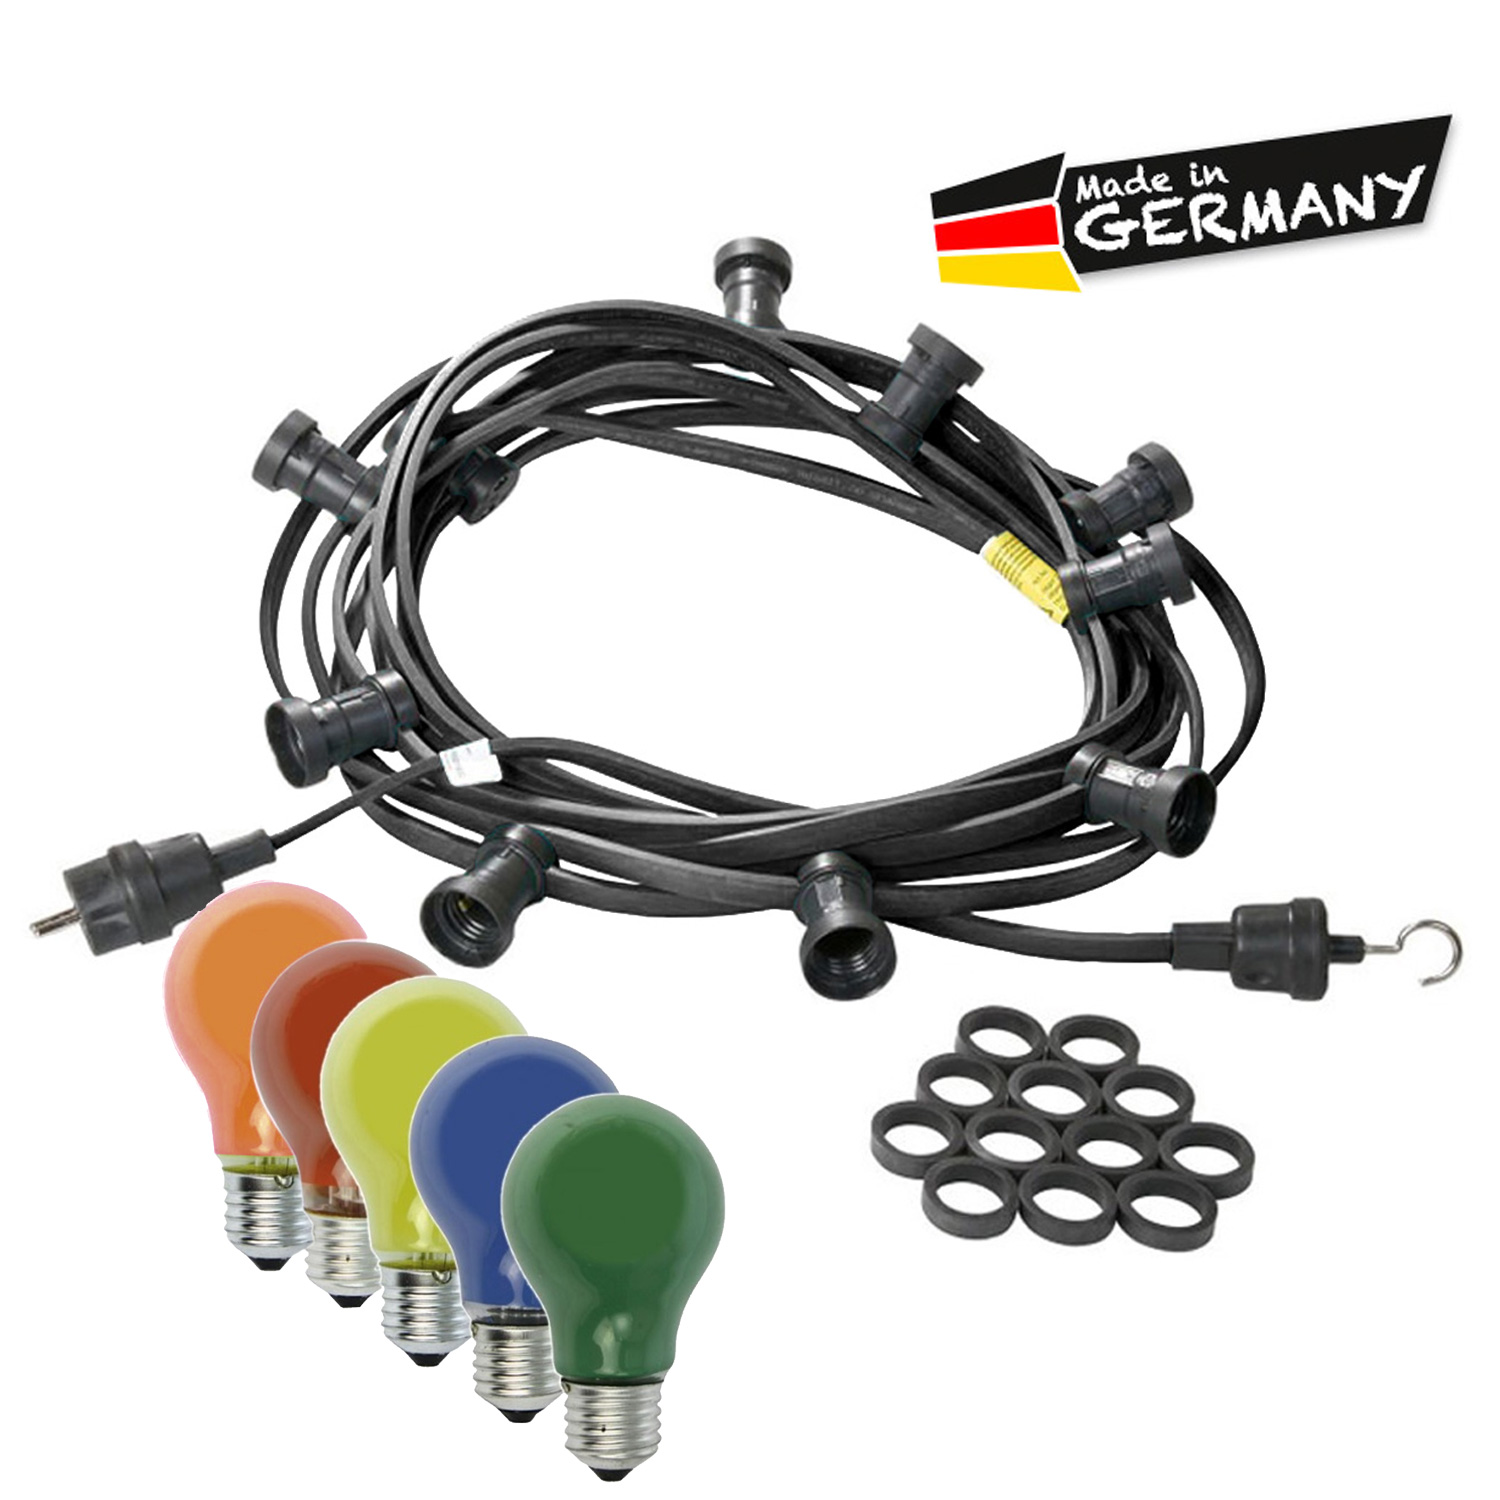 Illu-/Partylichterkette 50m - Außenlichterkette schwarz - Made in Germany - 50 bunte 25W Glühlampen